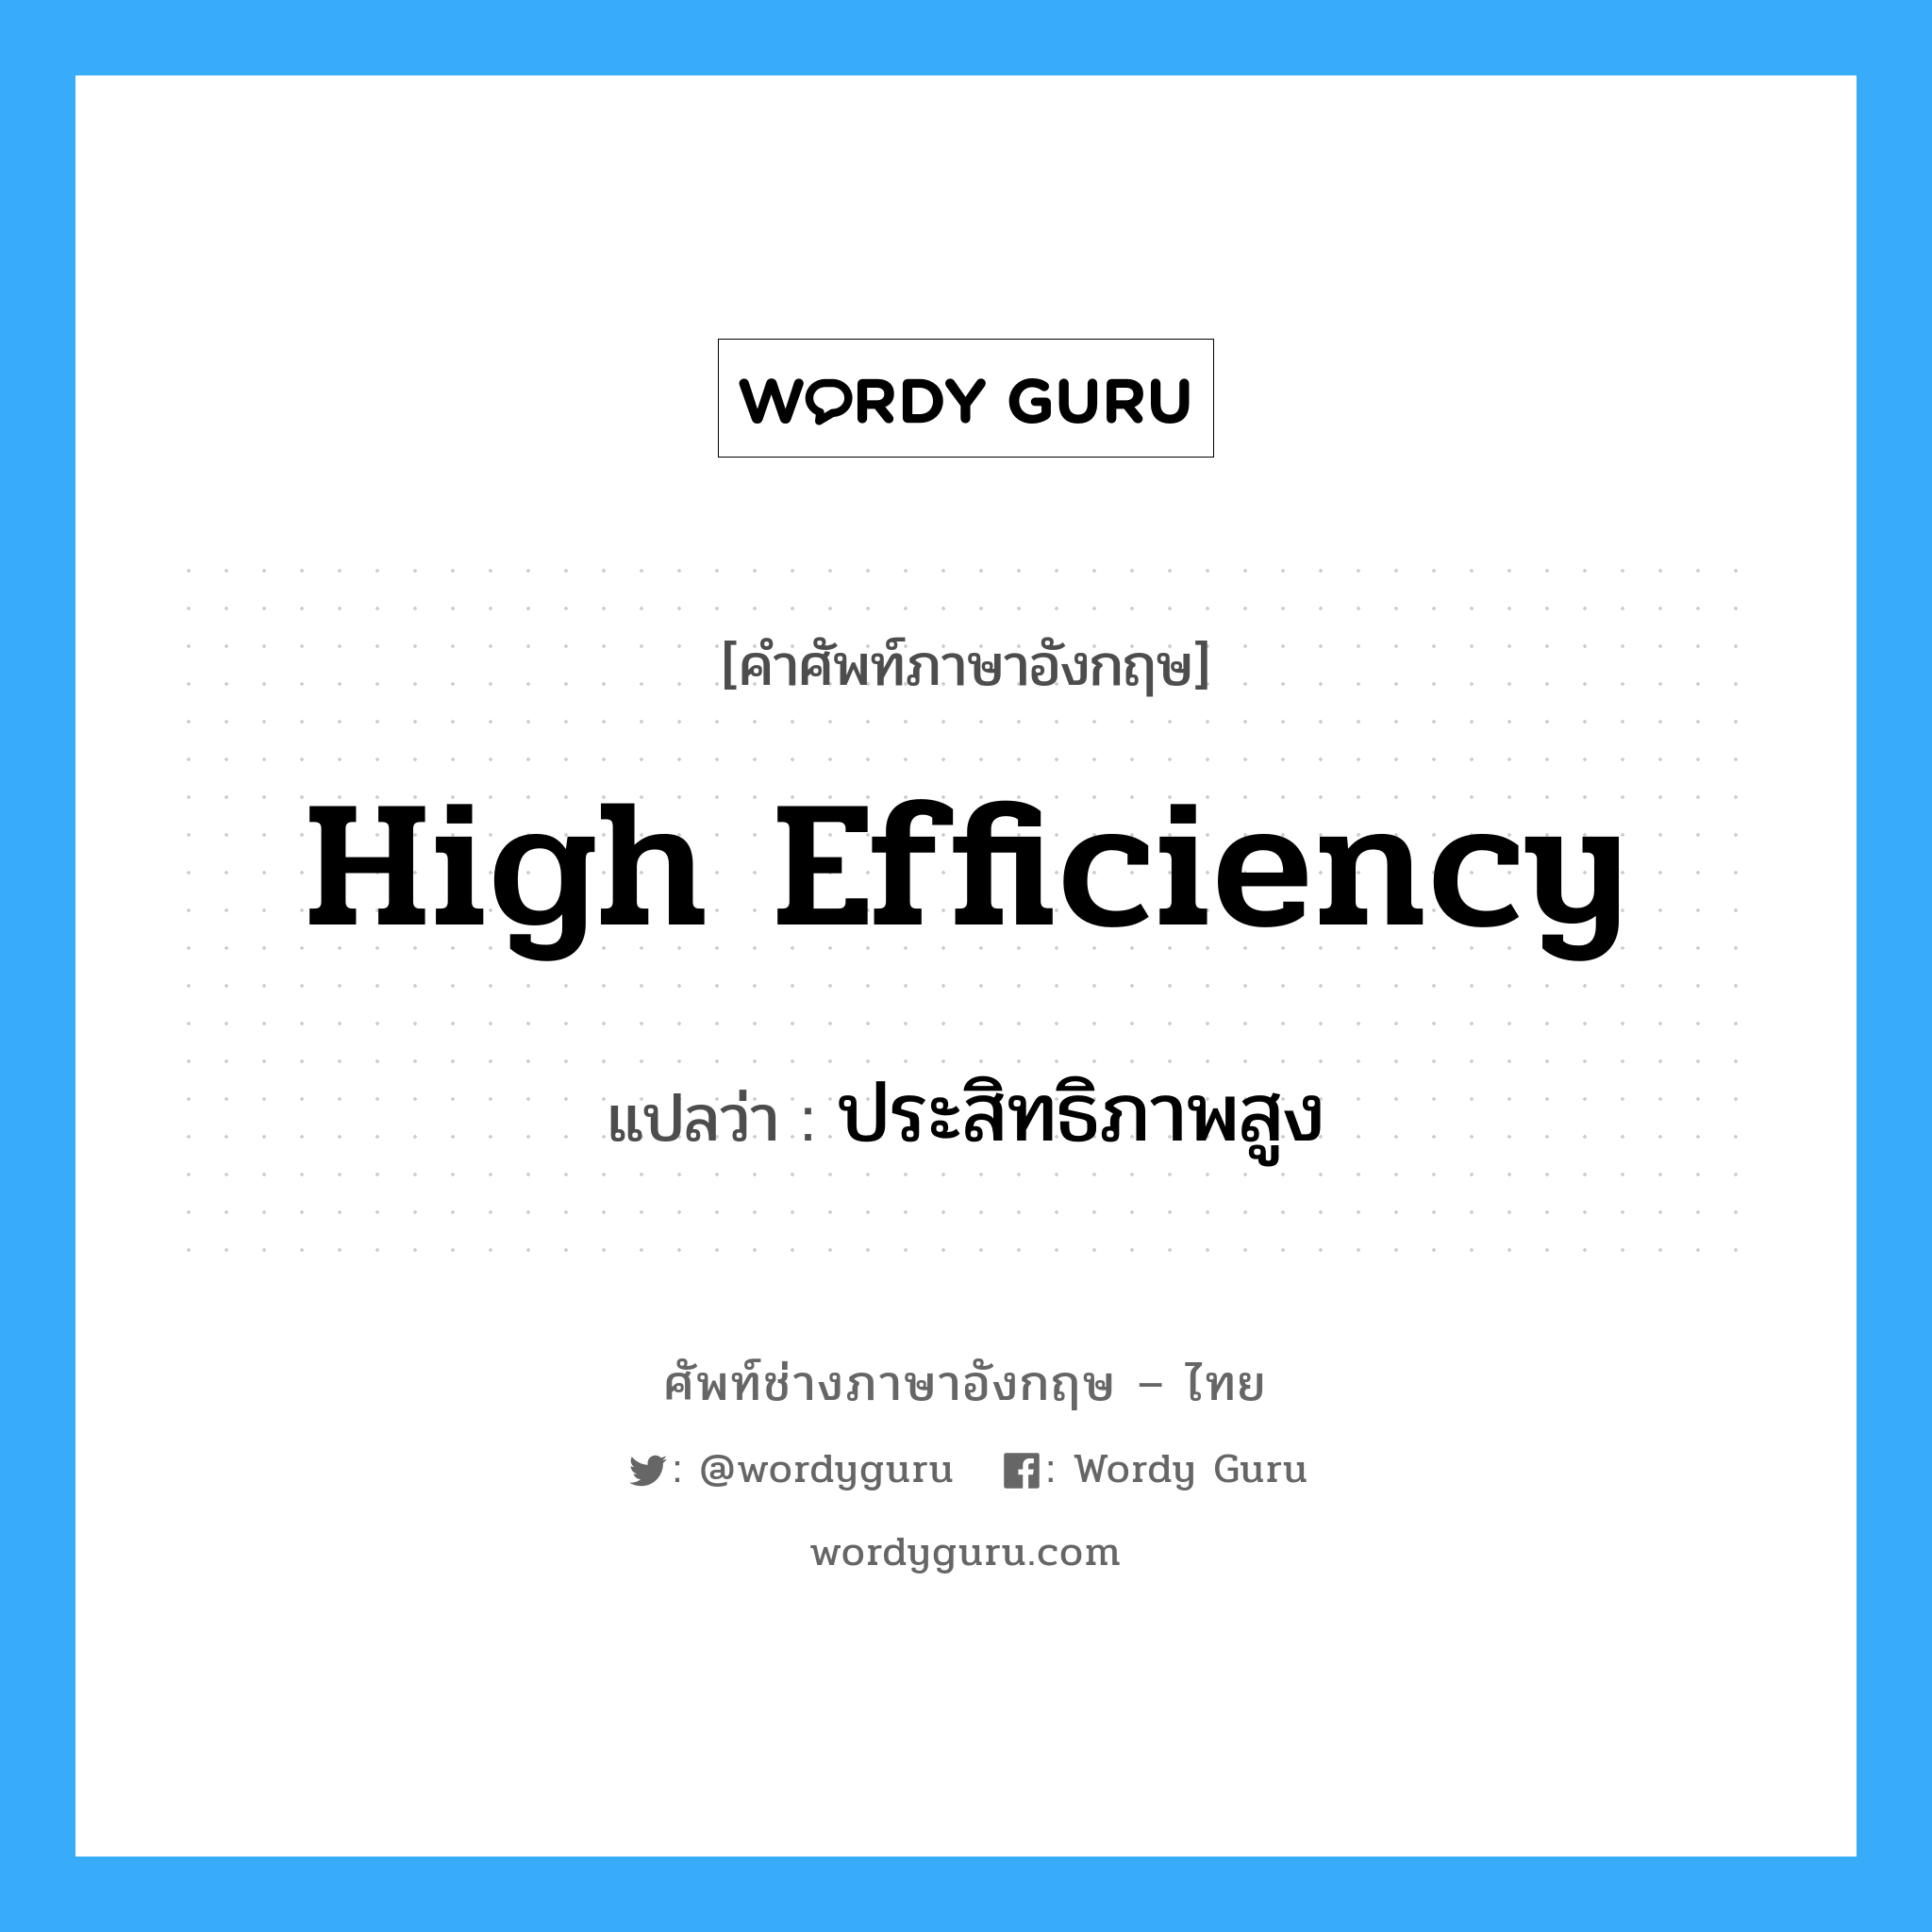 high efficiency แปลว่า?, คำศัพท์ช่างภาษาอังกฤษ - ไทย high efficiency คำศัพท์ภาษาอังกฤษ high efficiency แปลว่า ประสิทธิภาพสูง